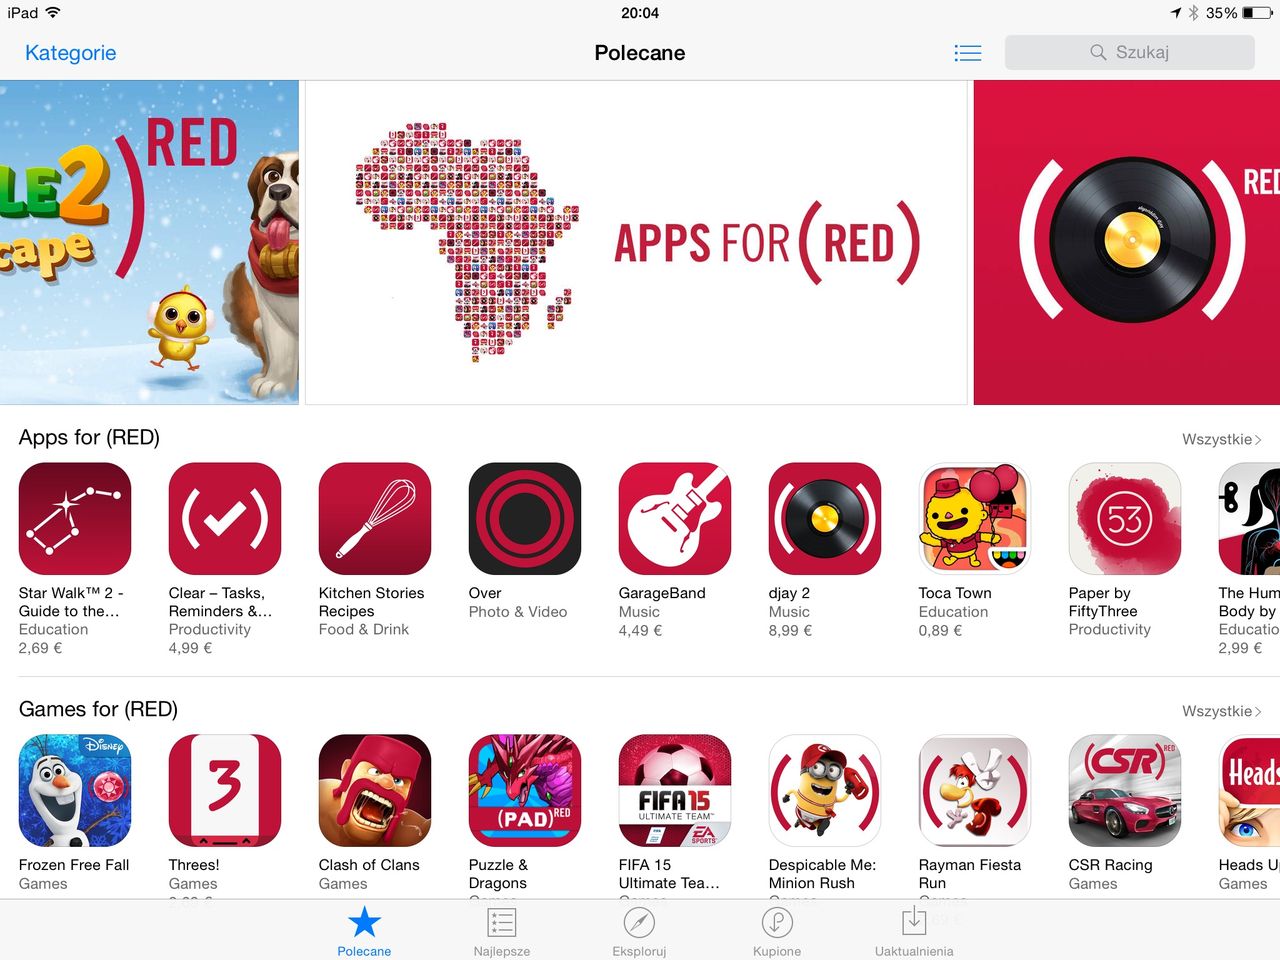 Czerwone ikonki aplikacji (RED) ciężko przeoczyć.